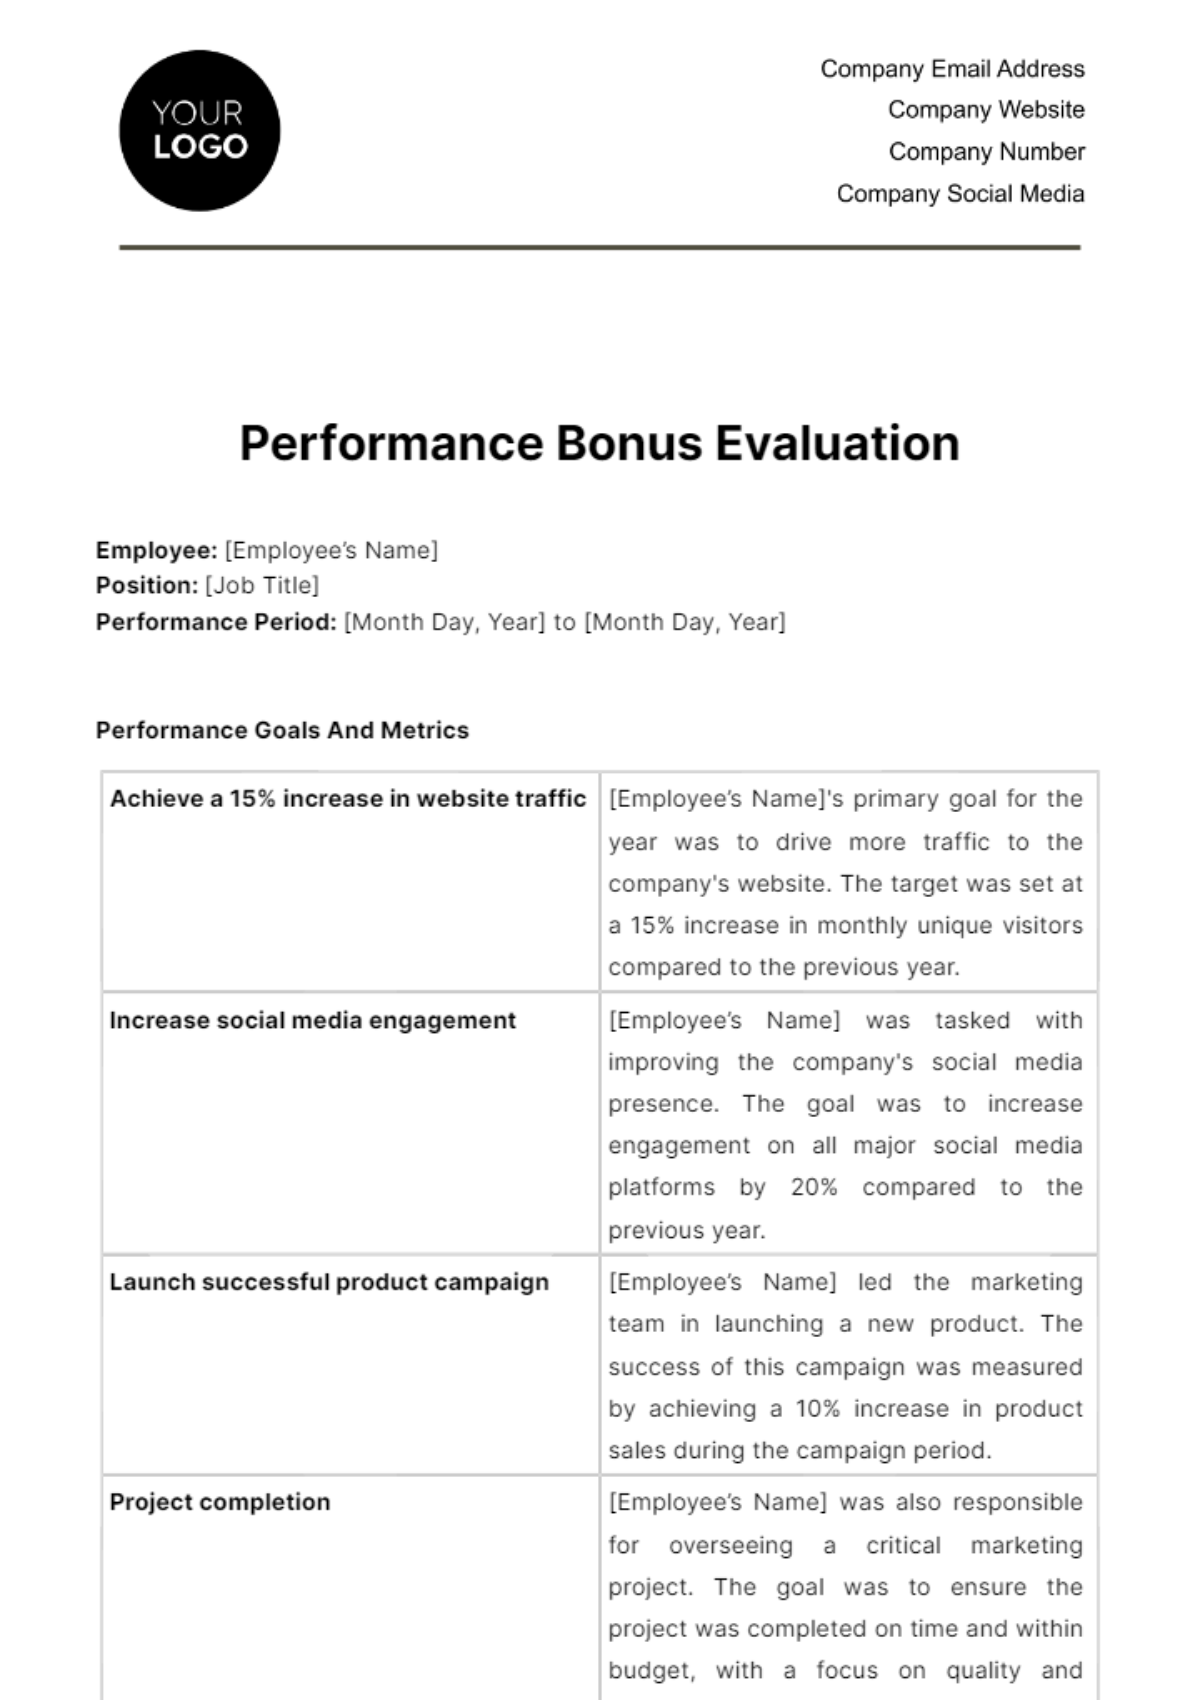 Free Performance Bonus Evaluation HR Template